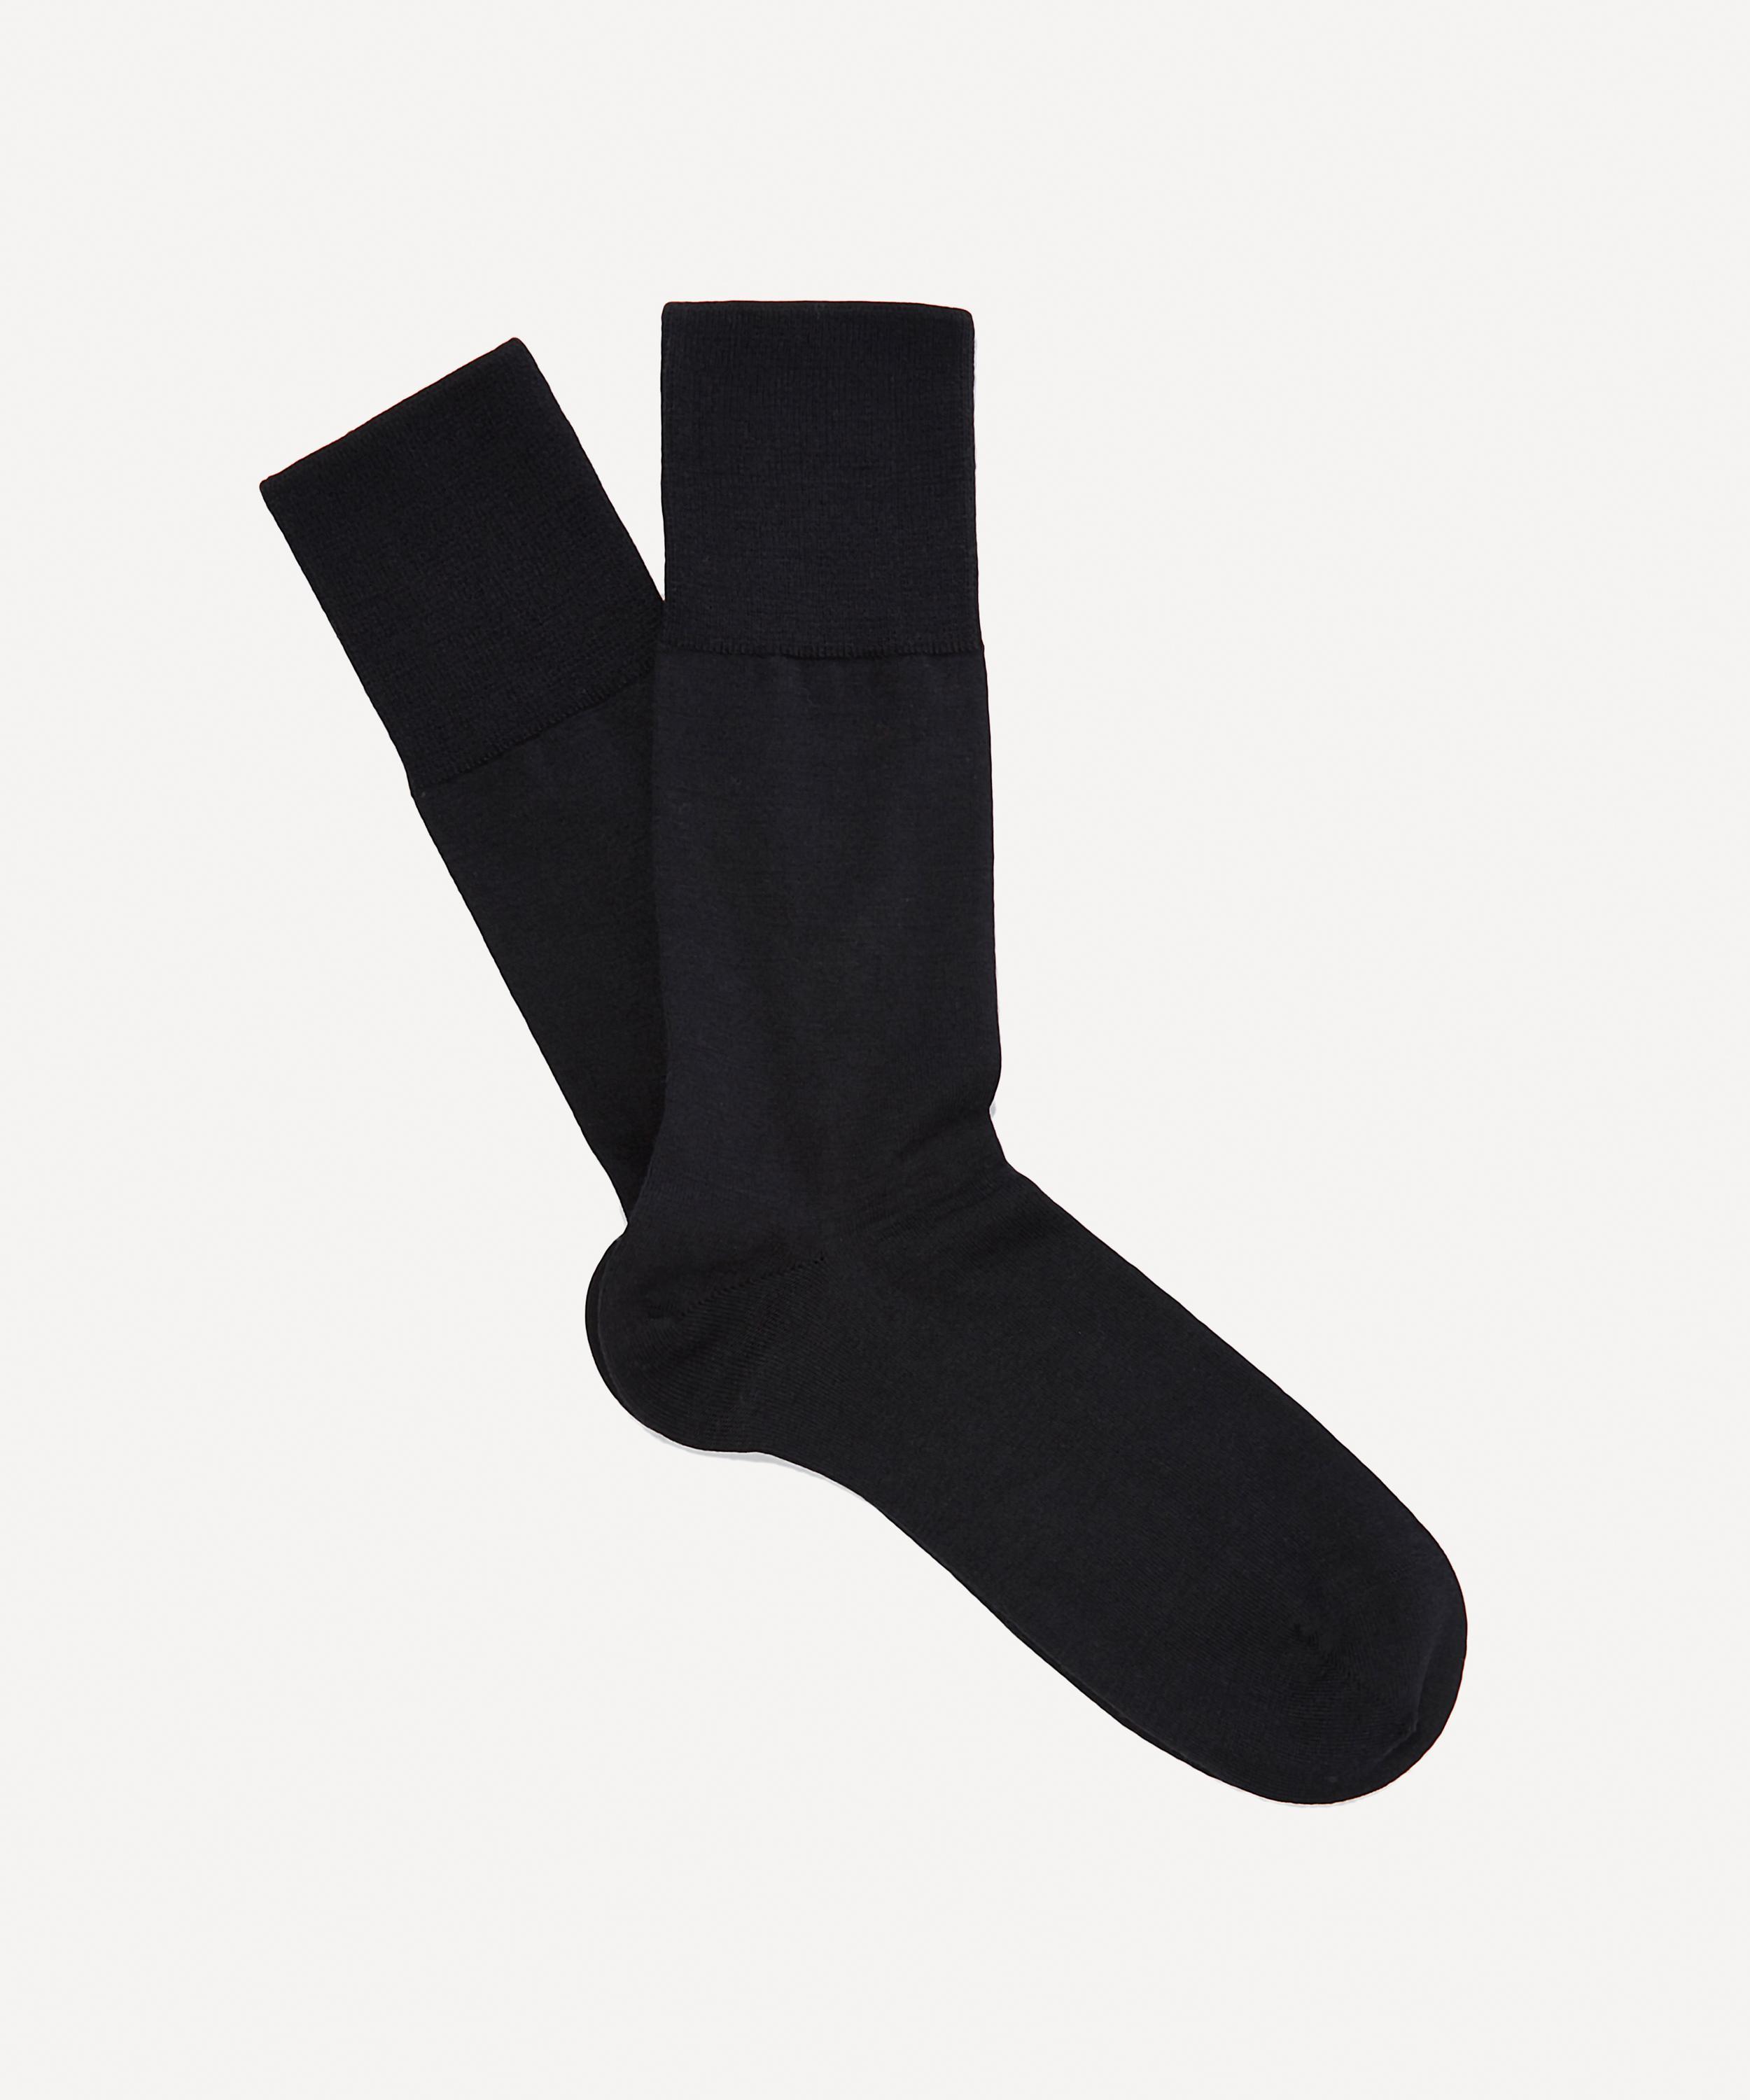 Falke Wool Airport Socks in Black for Men - Lyst